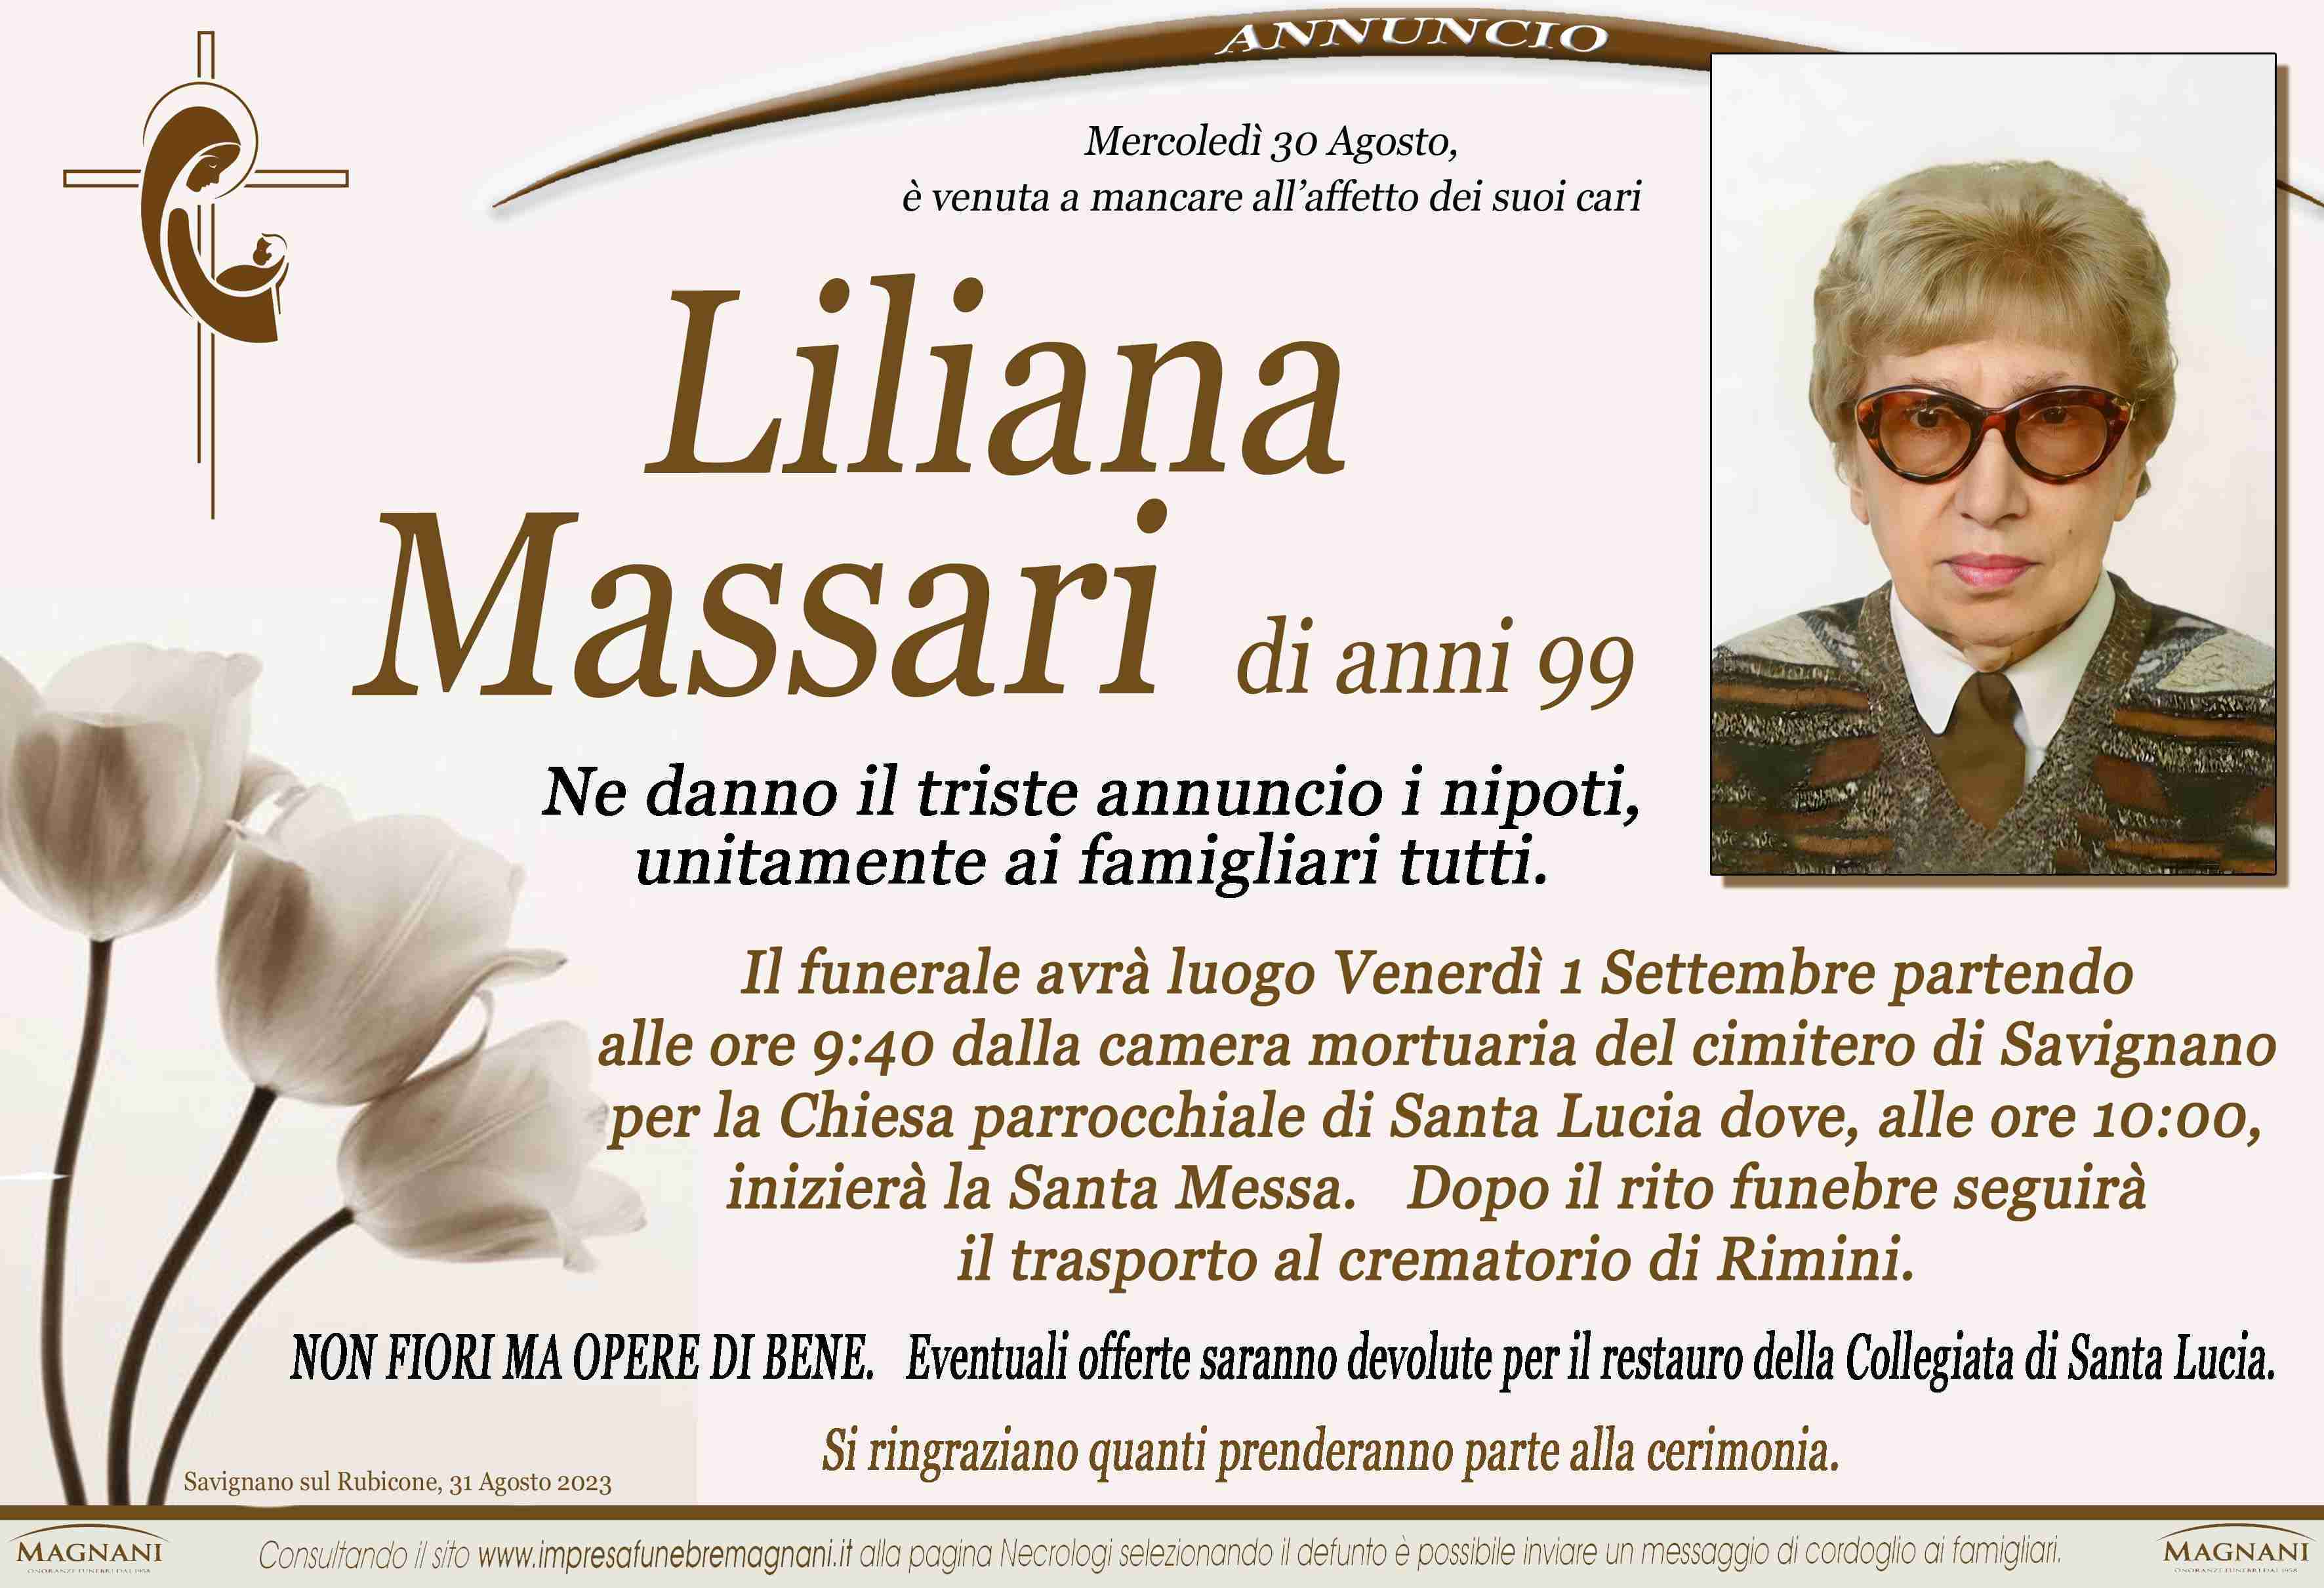 Liliana Massari